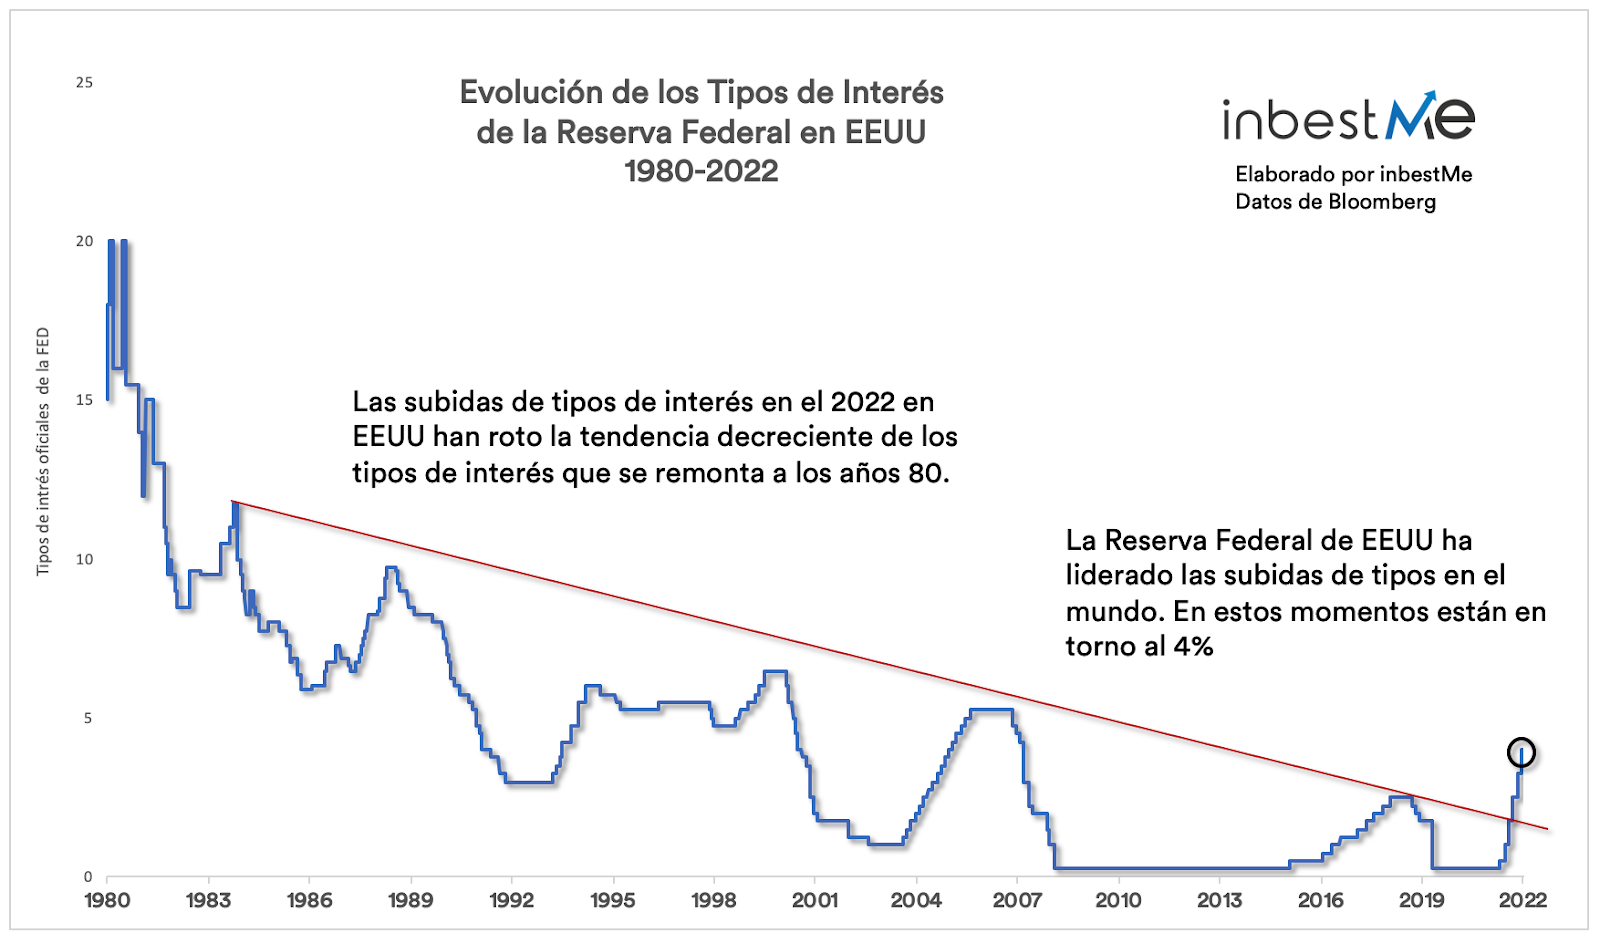 Evolución de los tipos de interés de la reserva federal en eeuu 1980-2022